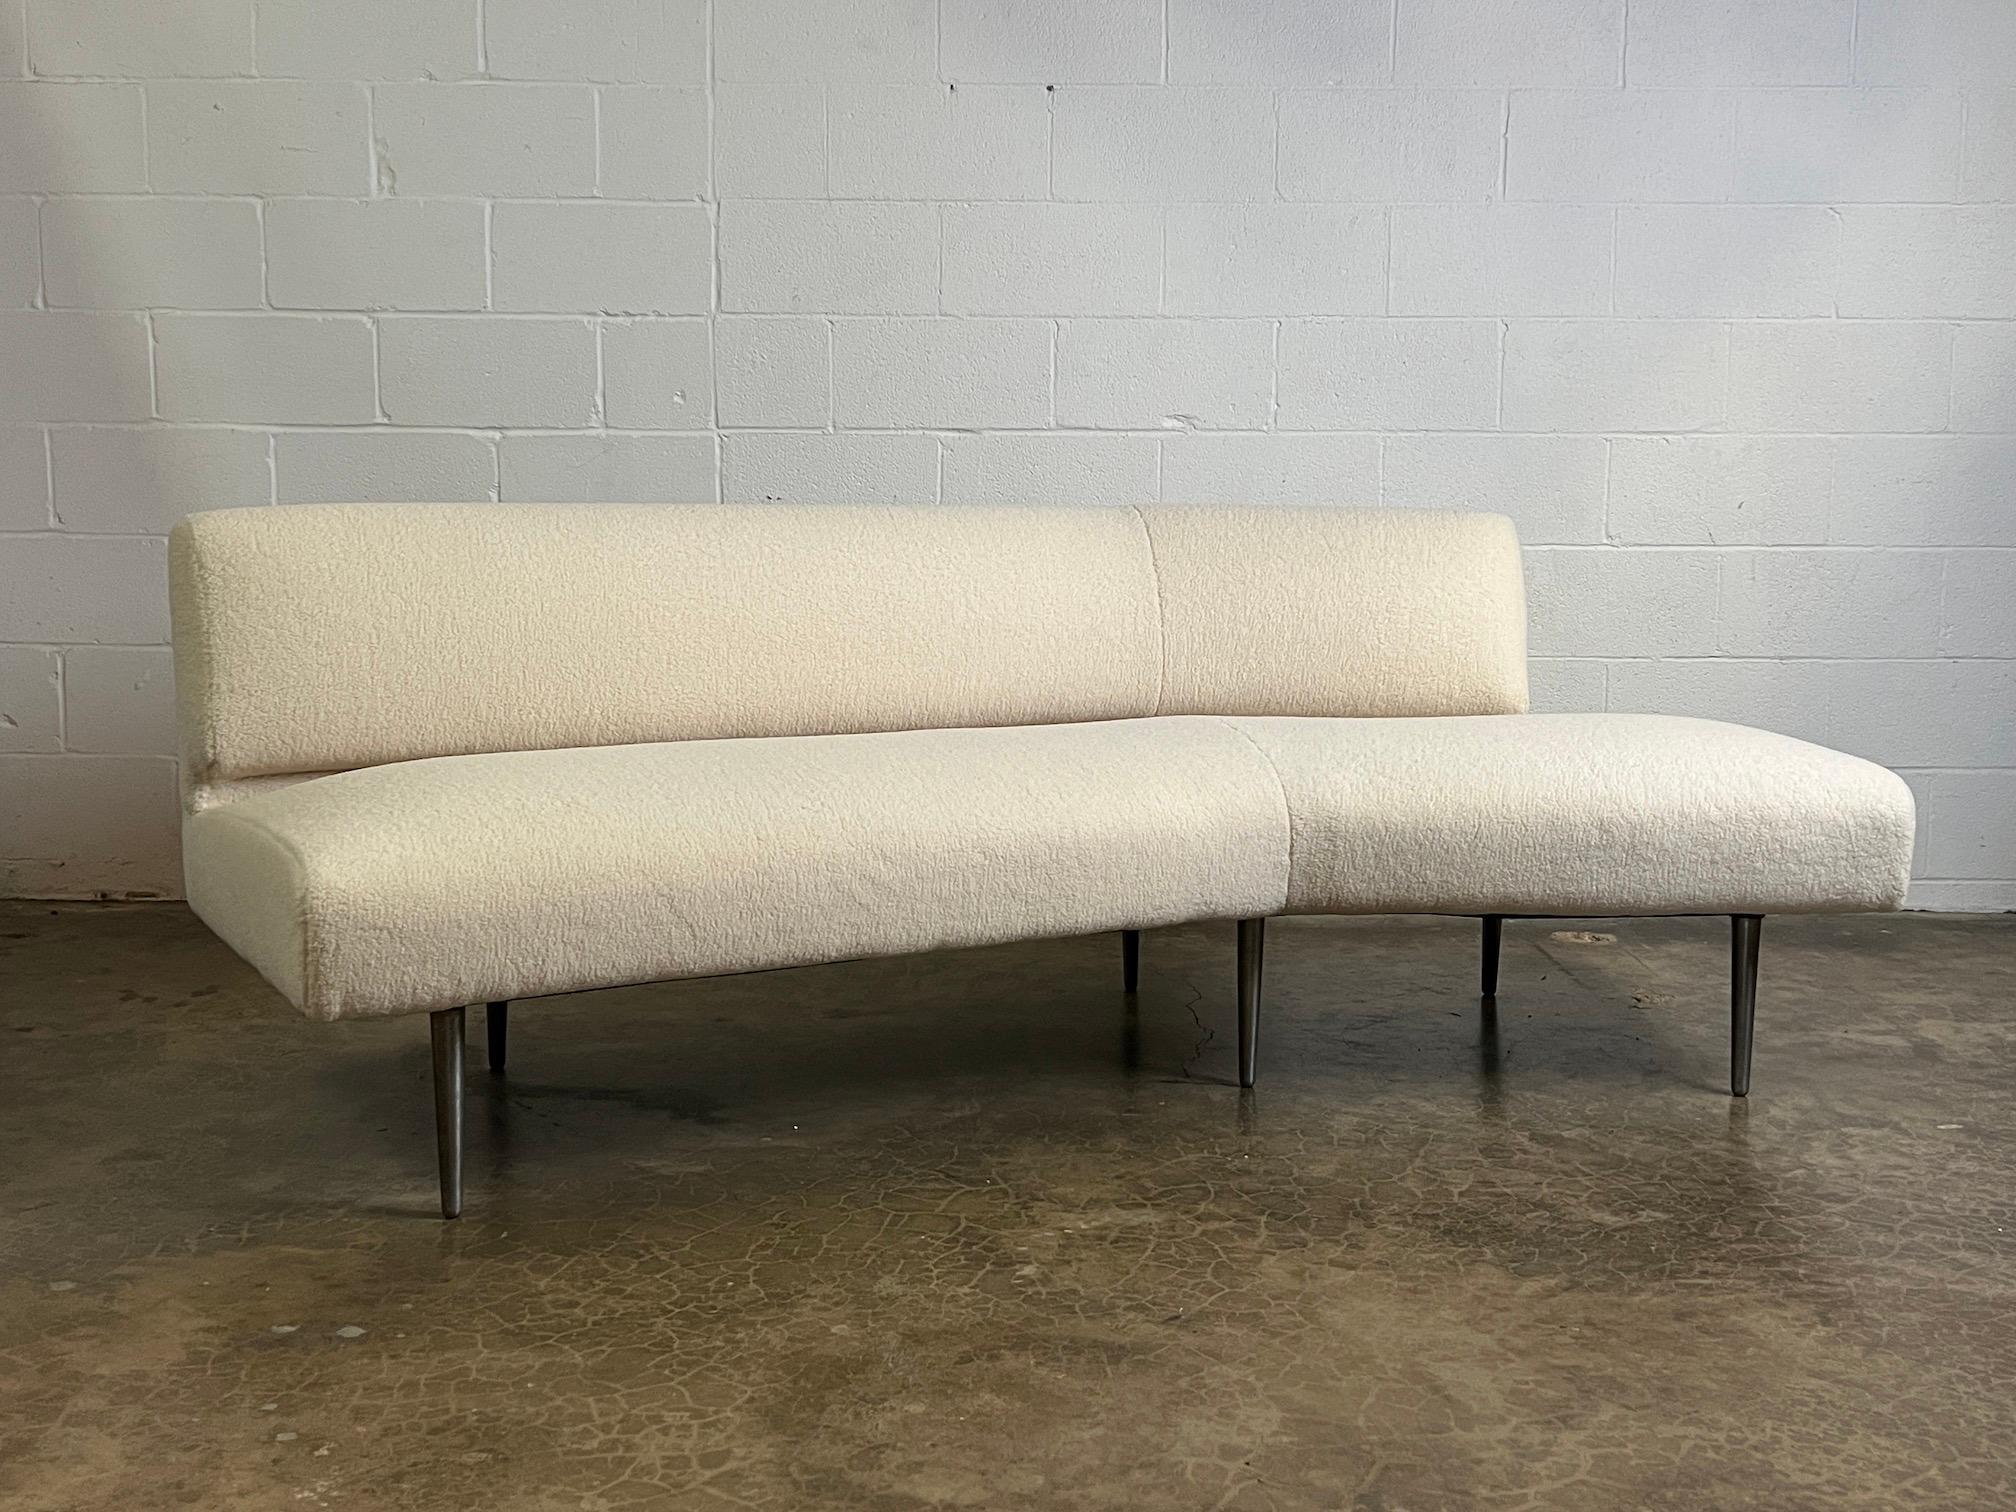 Dunbar Angle Sofa #4756 on Aluminum Legs 2